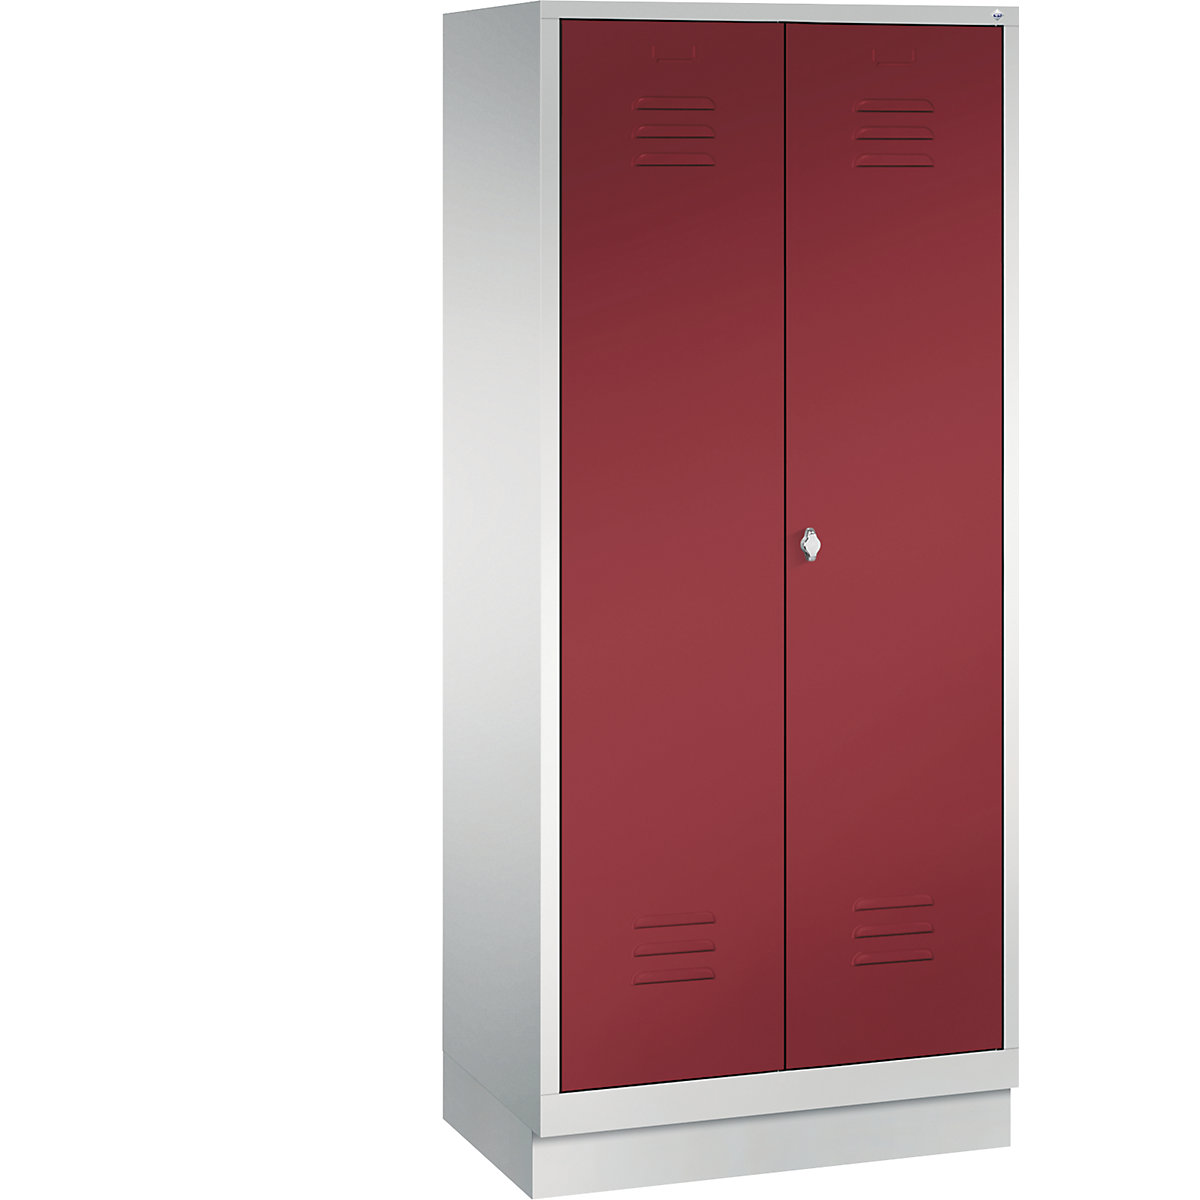 Armario de almacenamiento CLASSIC con zócalo y puertas batientes que cierran al ras entre sí – C+P, 2 compartimentos, anchura de compartimento 400 mm, gris luminoso / rojo rubí-10